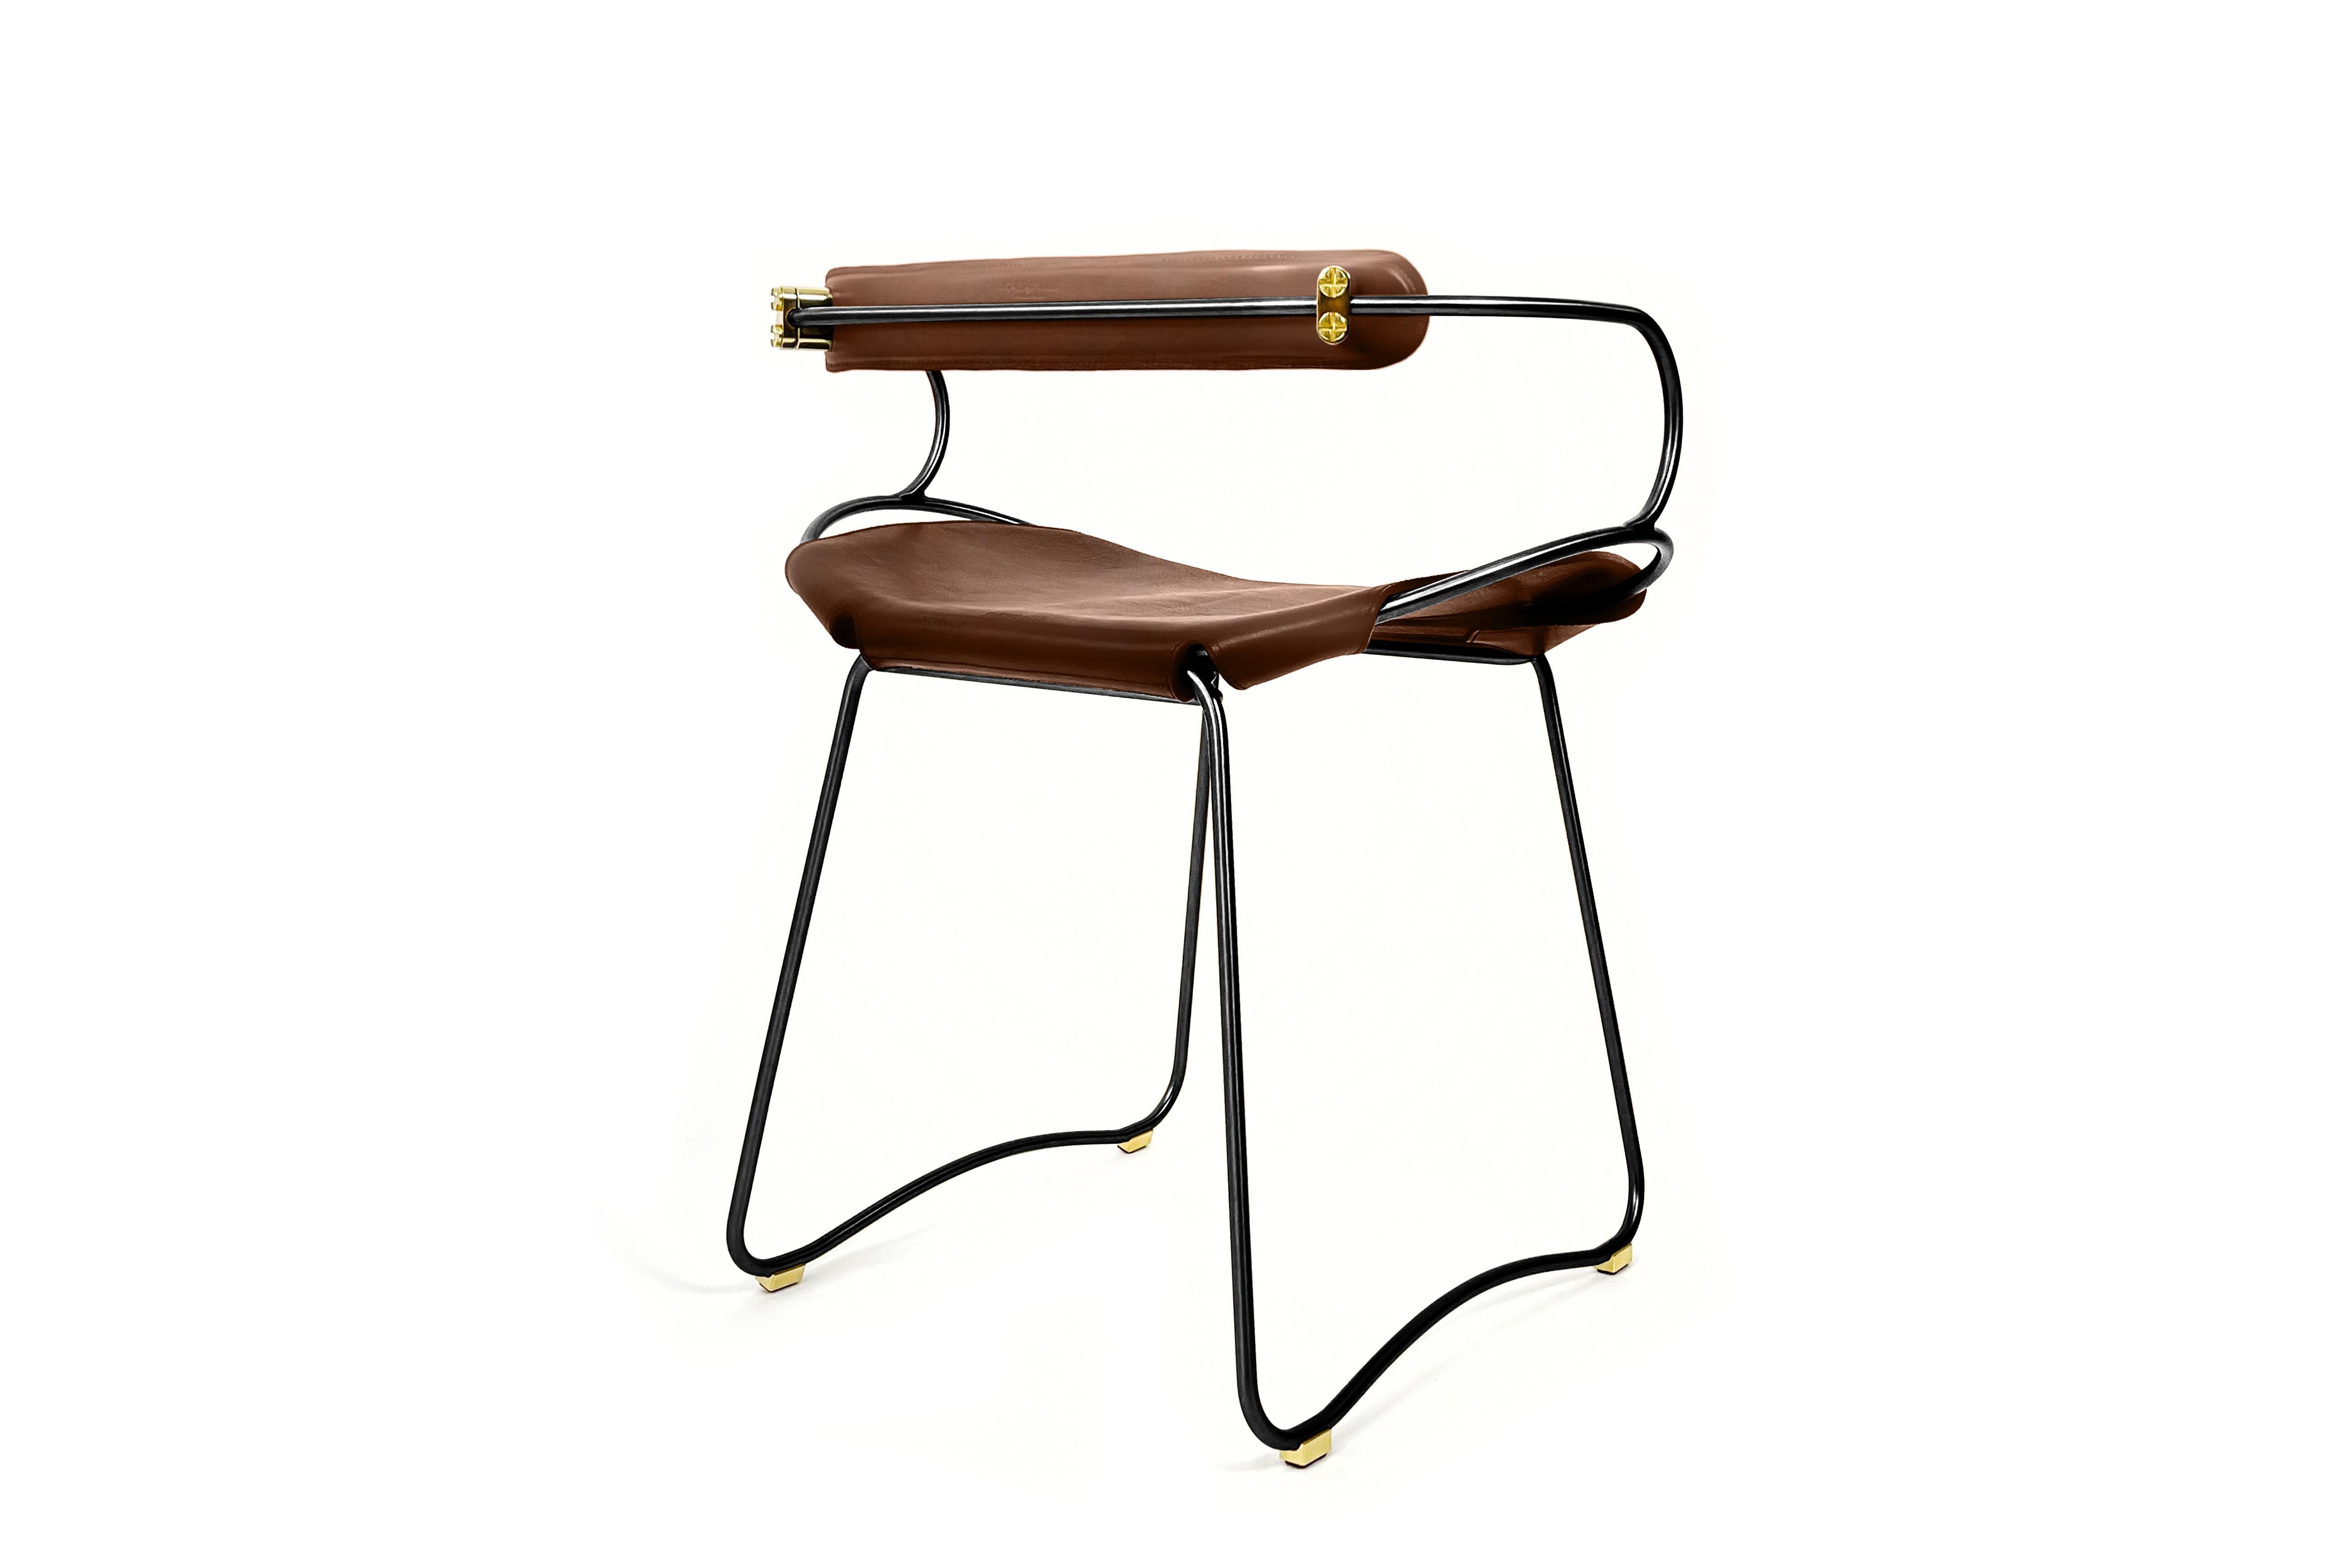 Der Hug Contemporary Tischhocker mit Rückenlehne wurde mit einer leichten Ästhetik entworfen und konzipiert. Die leichte Schwingung der Stahlstange von 12 mm wird durch die Flexibilität des doppelten 3,5 mm dicken Leders ergänzt. Wenn man in diesem